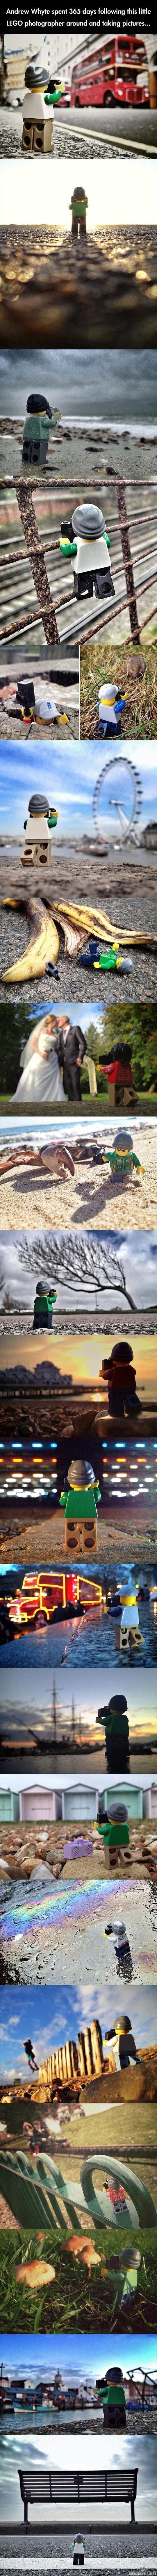 Lego valokuvaaja ympäri maailman